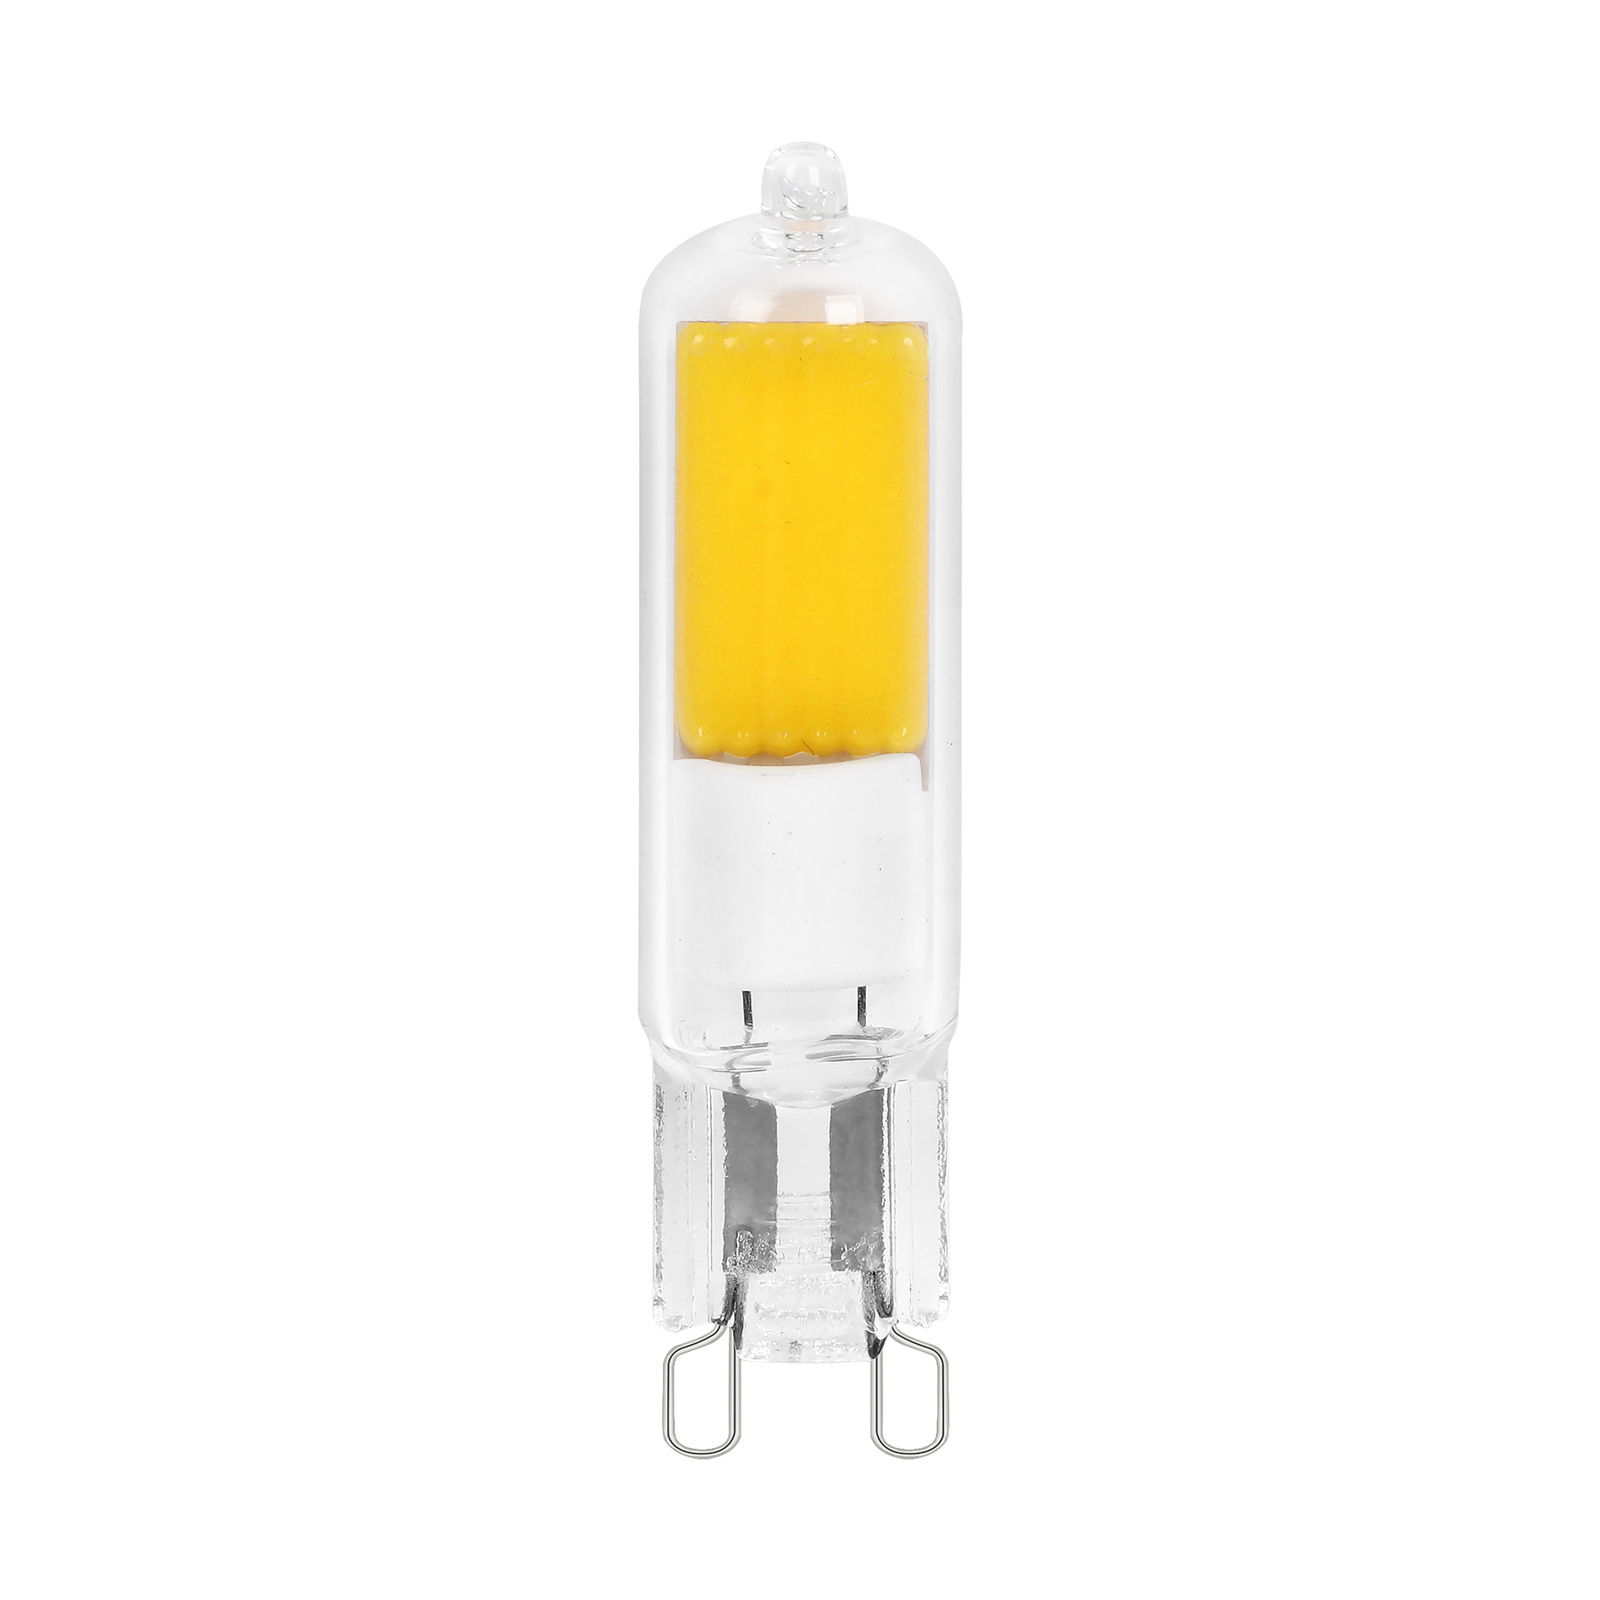 Arcchio bi-pin LED bulb, G9, 4W, 2700K, set of 5